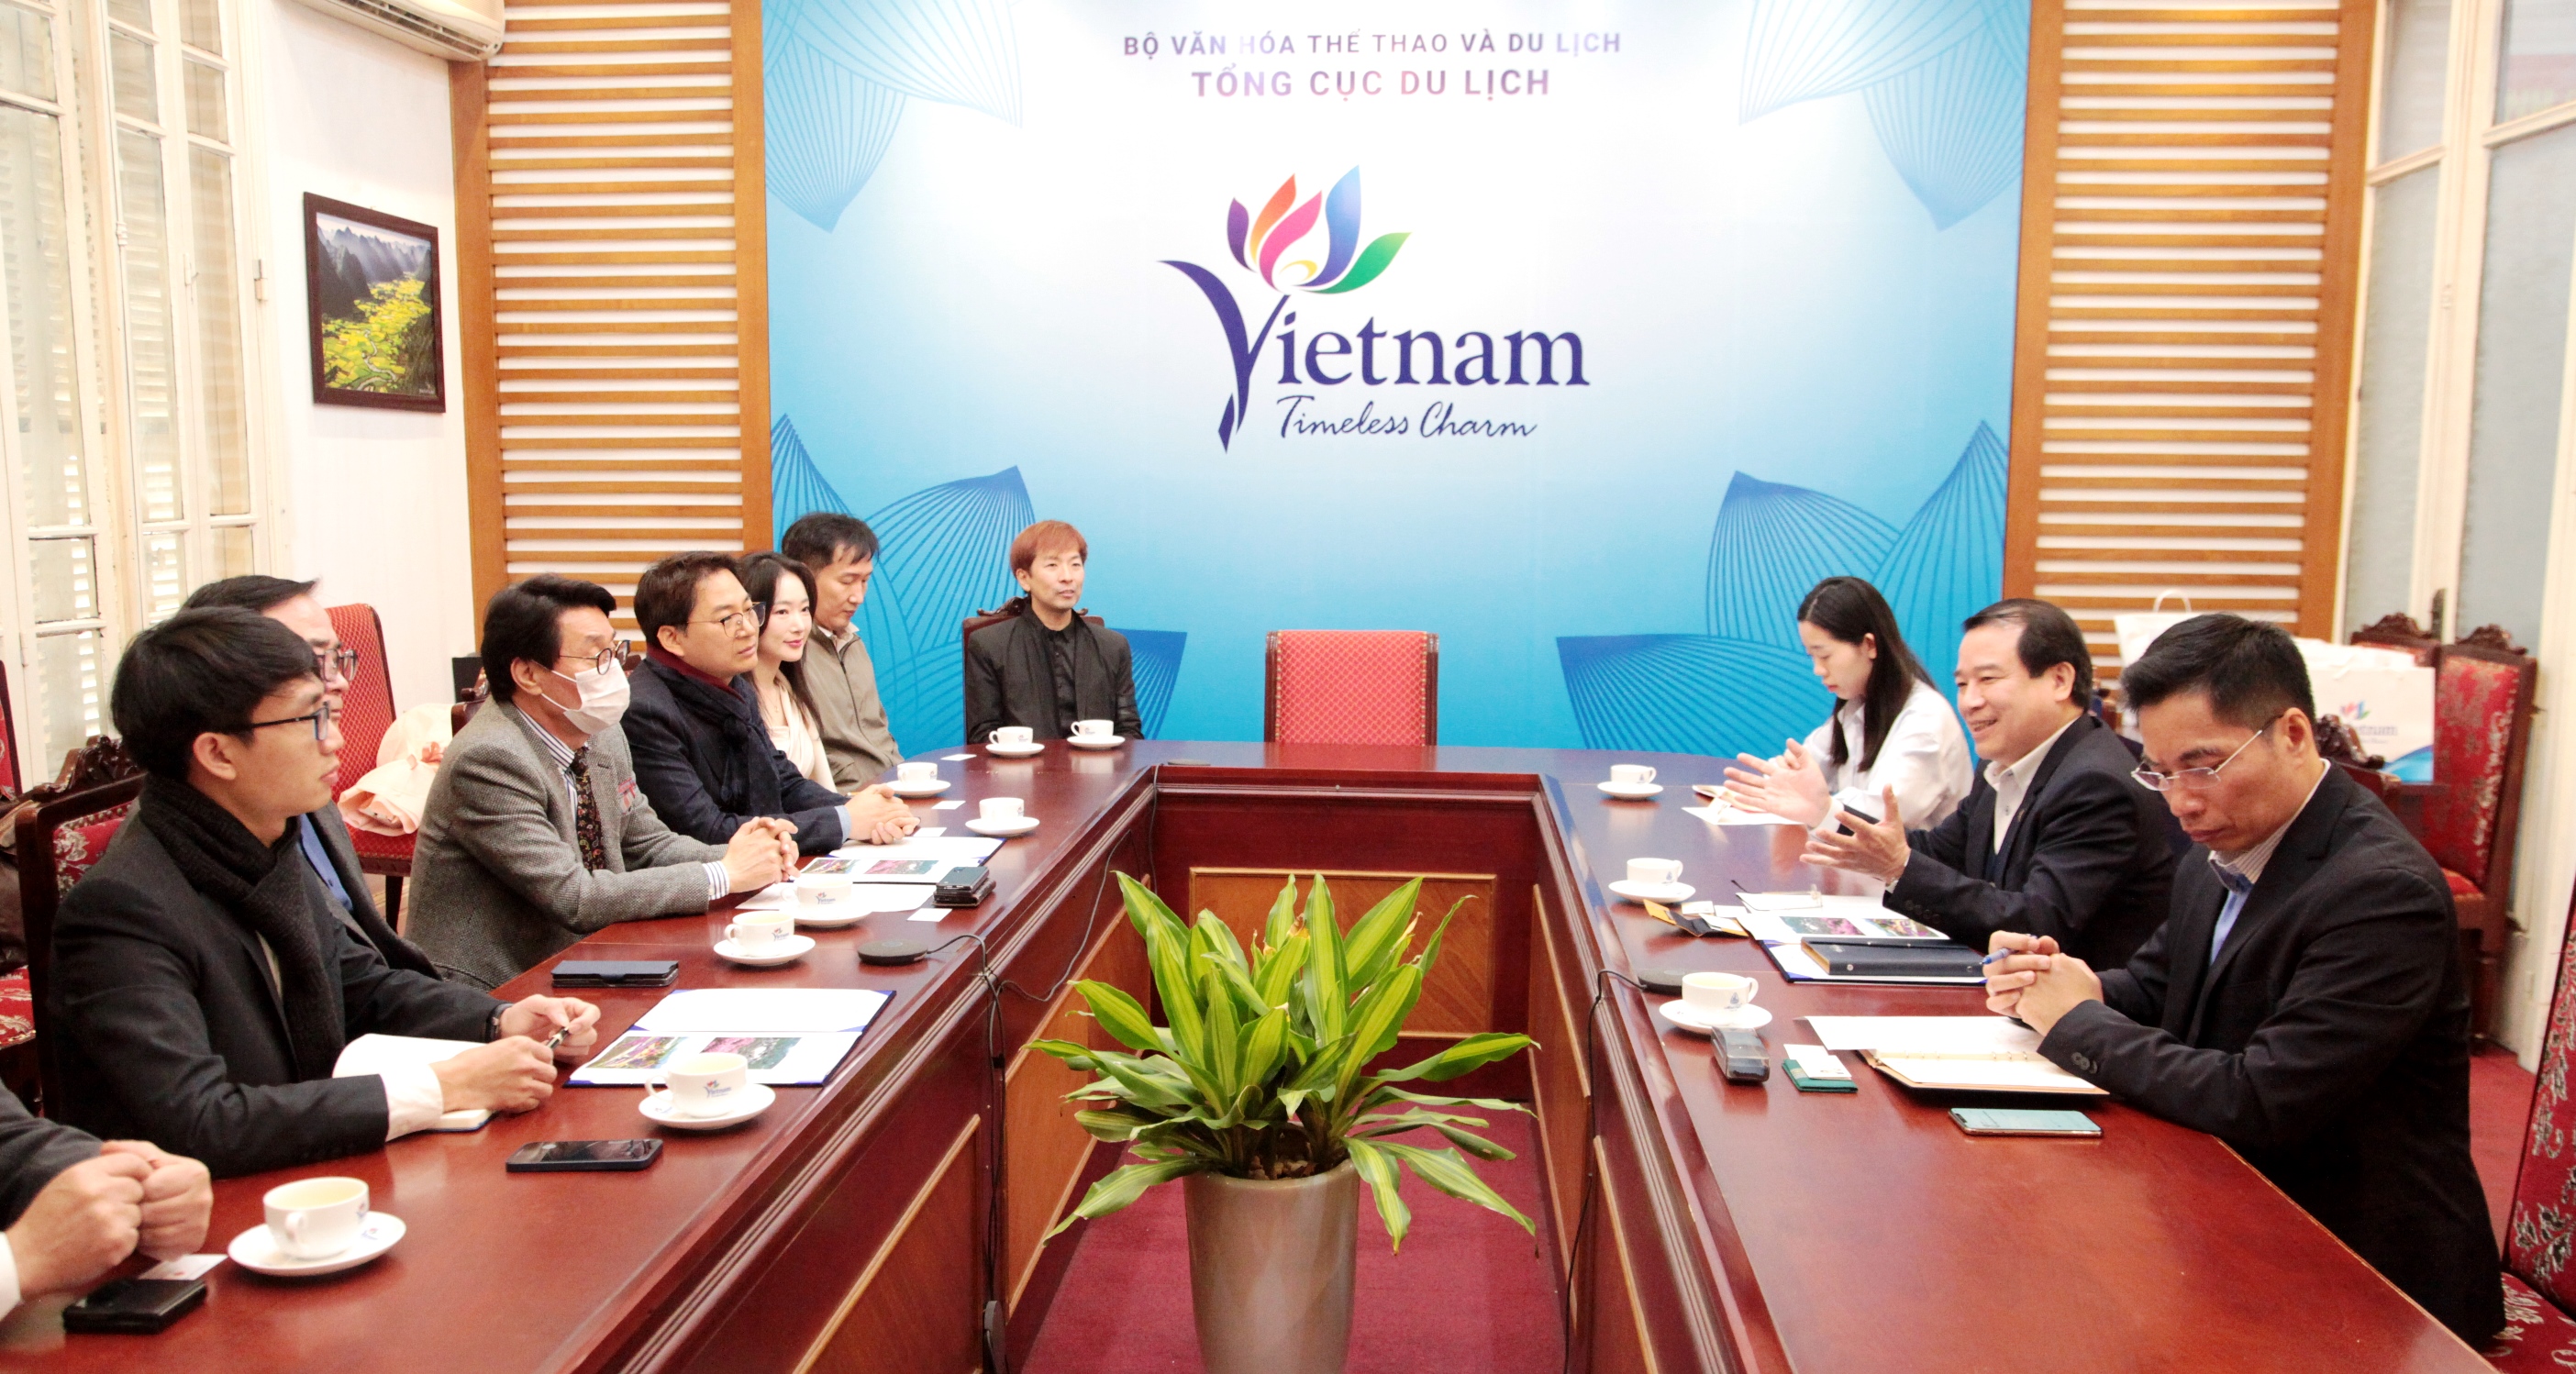 Hàn Quốc mong muốn tăng cường hợp tác quảng bá du lịch Việt Nam thông qua các sự kiện văn hóa, giải trí